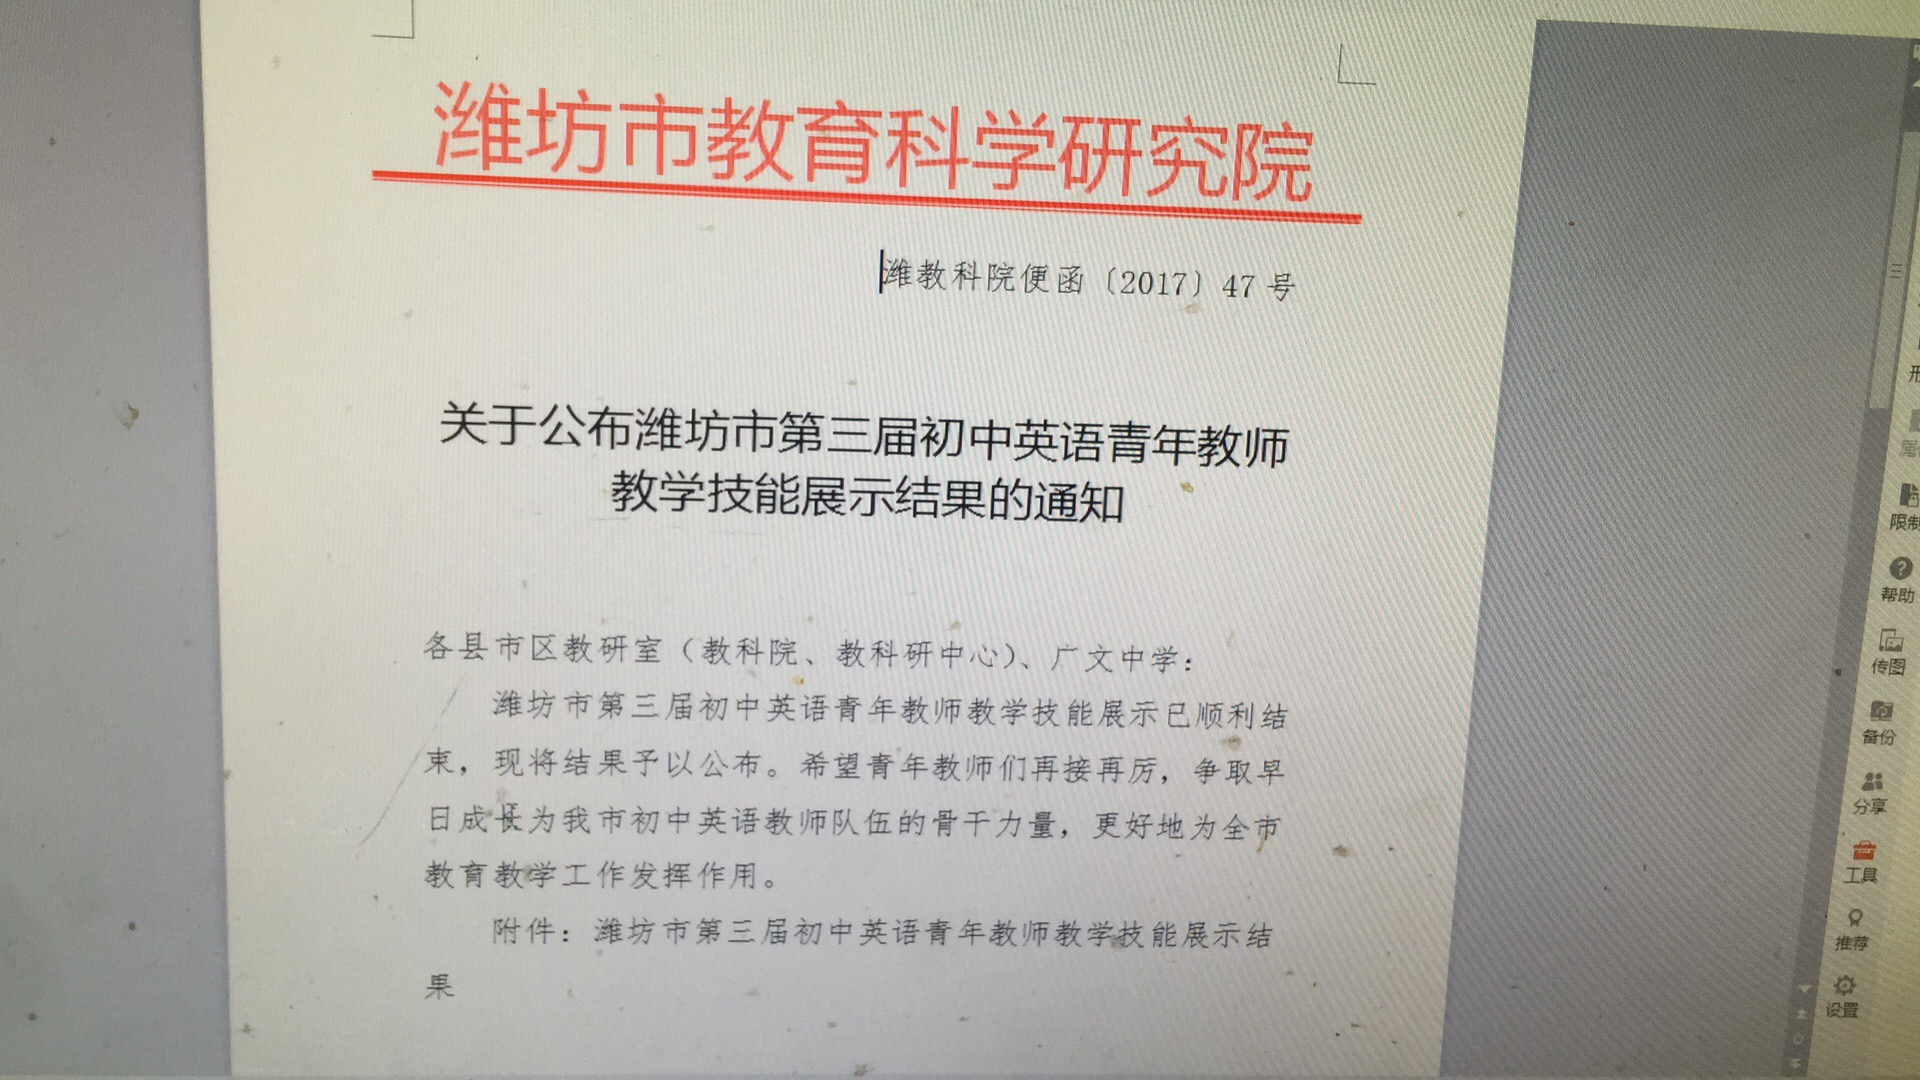 潍坊市第三届初中英语青年教师教学技能大赛红头文件1.jpg